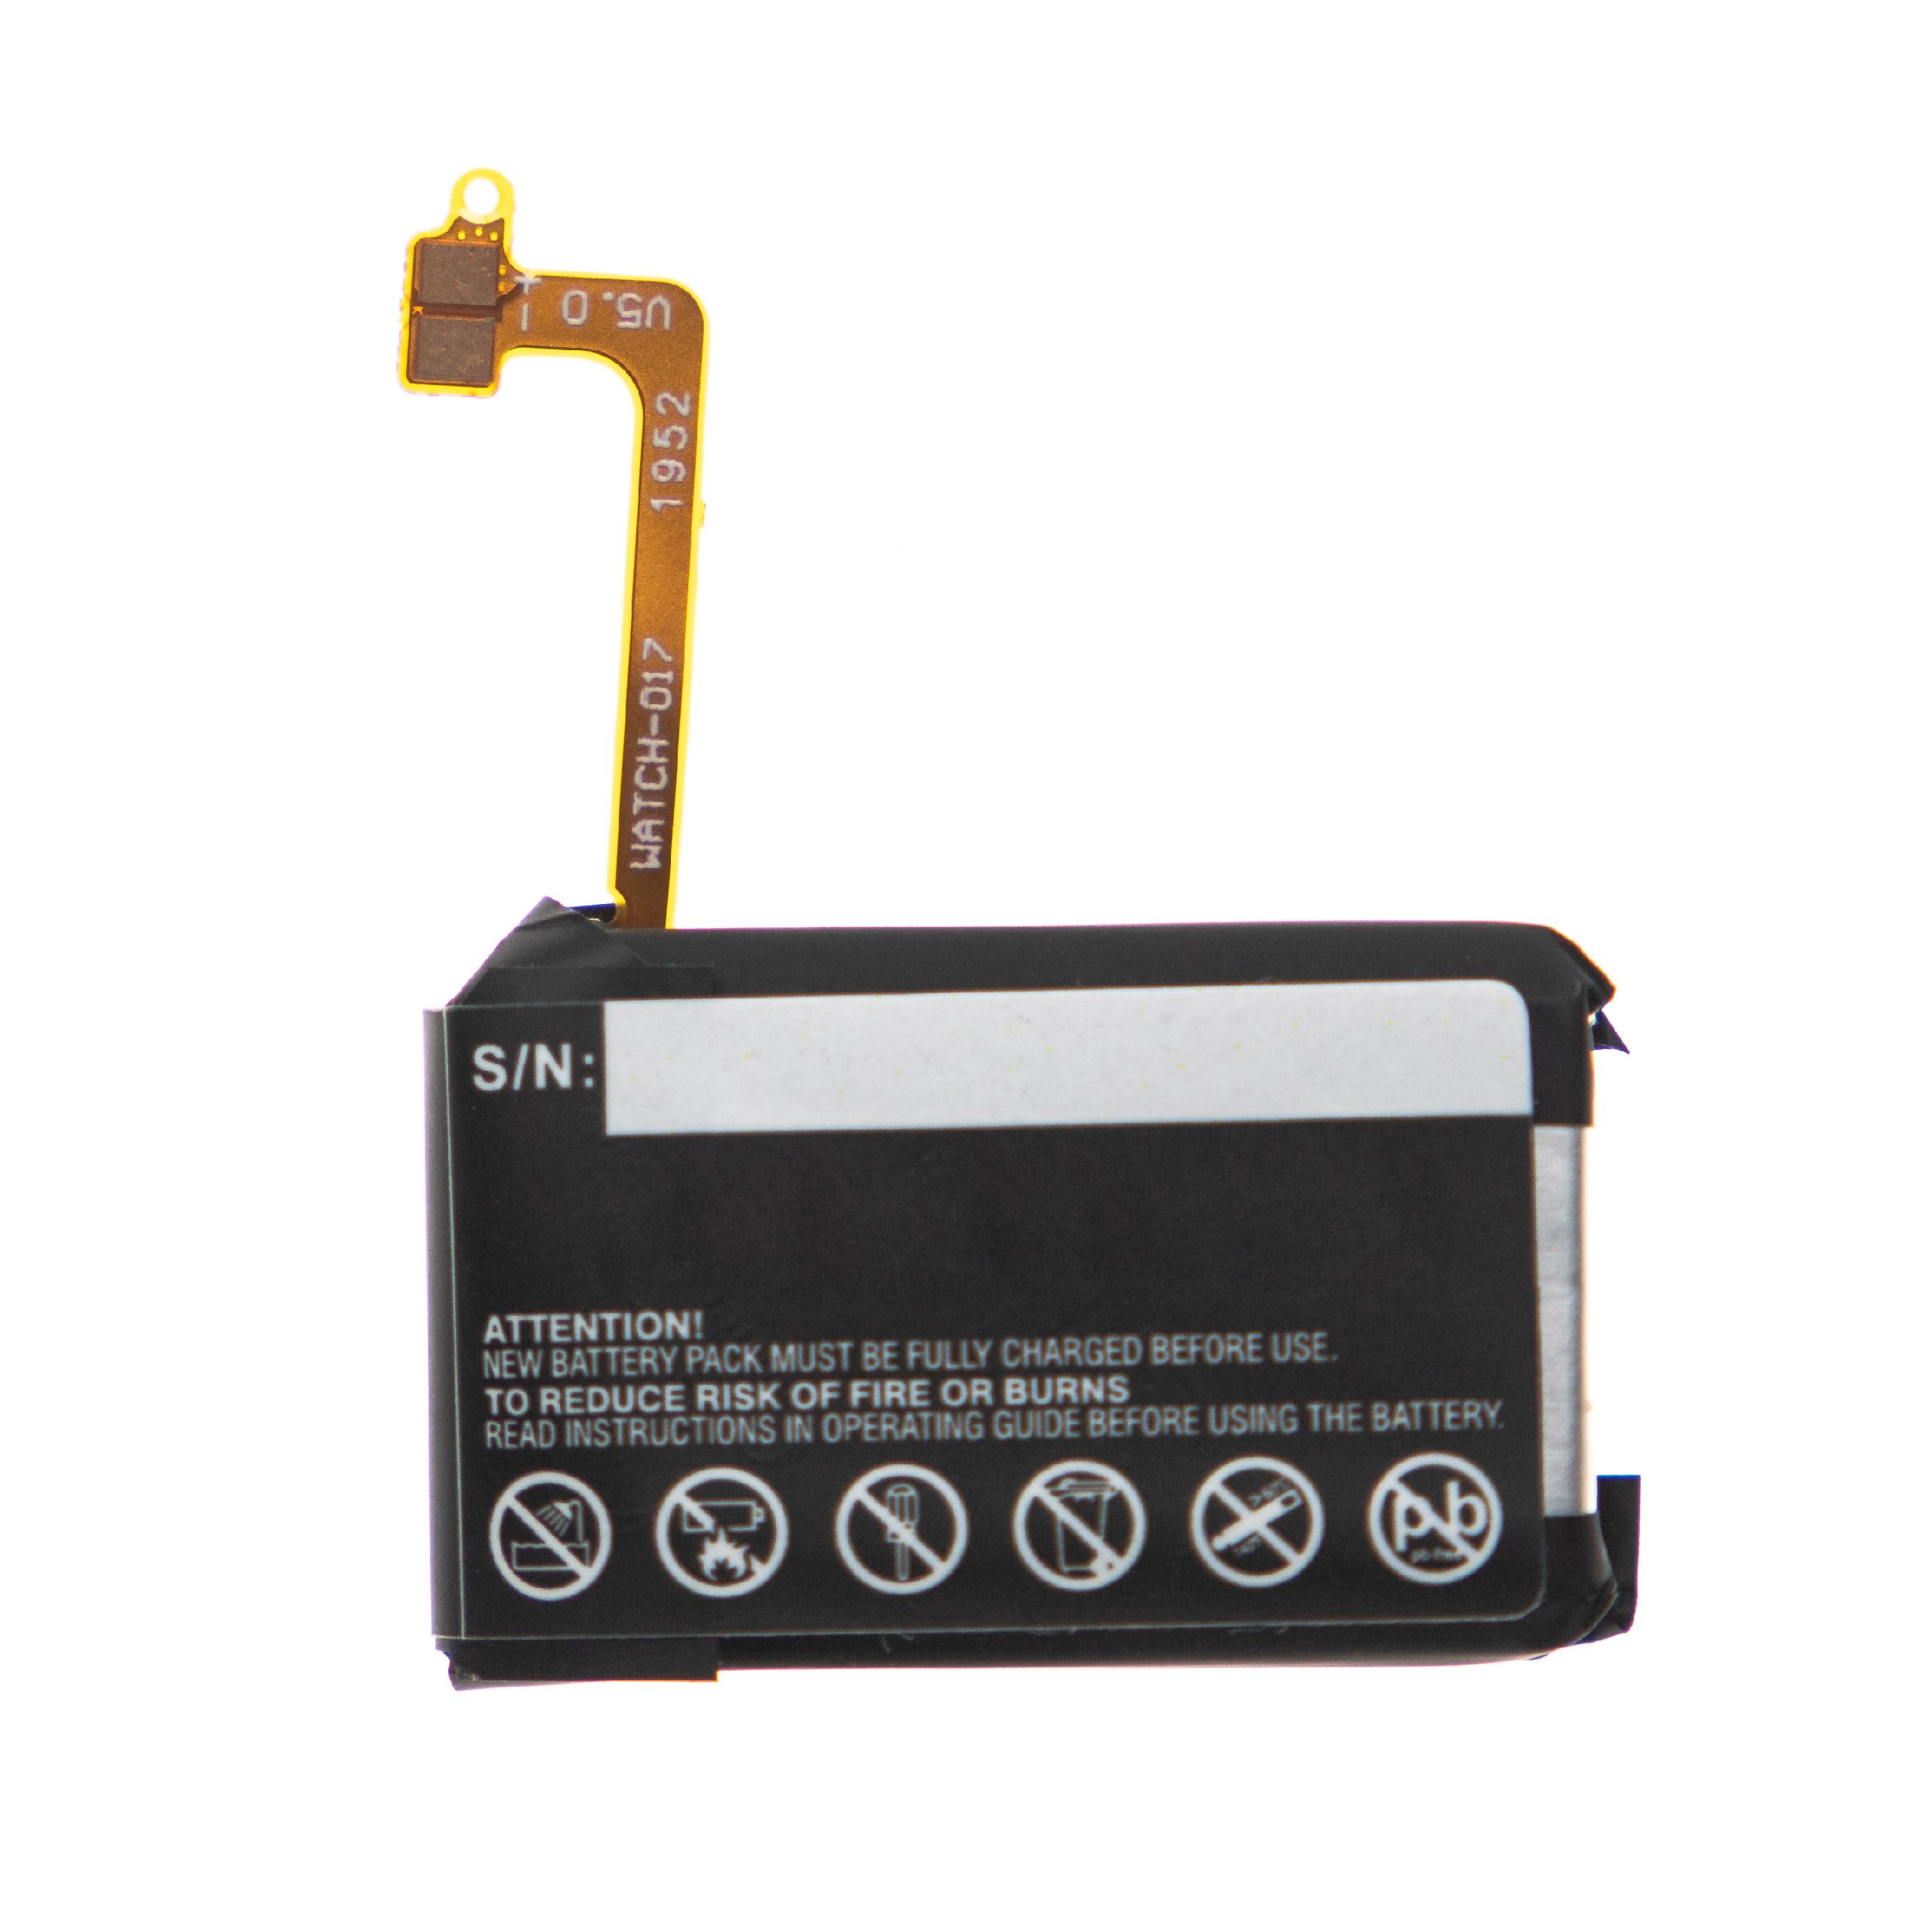 Batterie remplace Samsung EB-BR730ABE, GH43-04538B pour montre connectée - 300mAh 3,7V Li-polymère